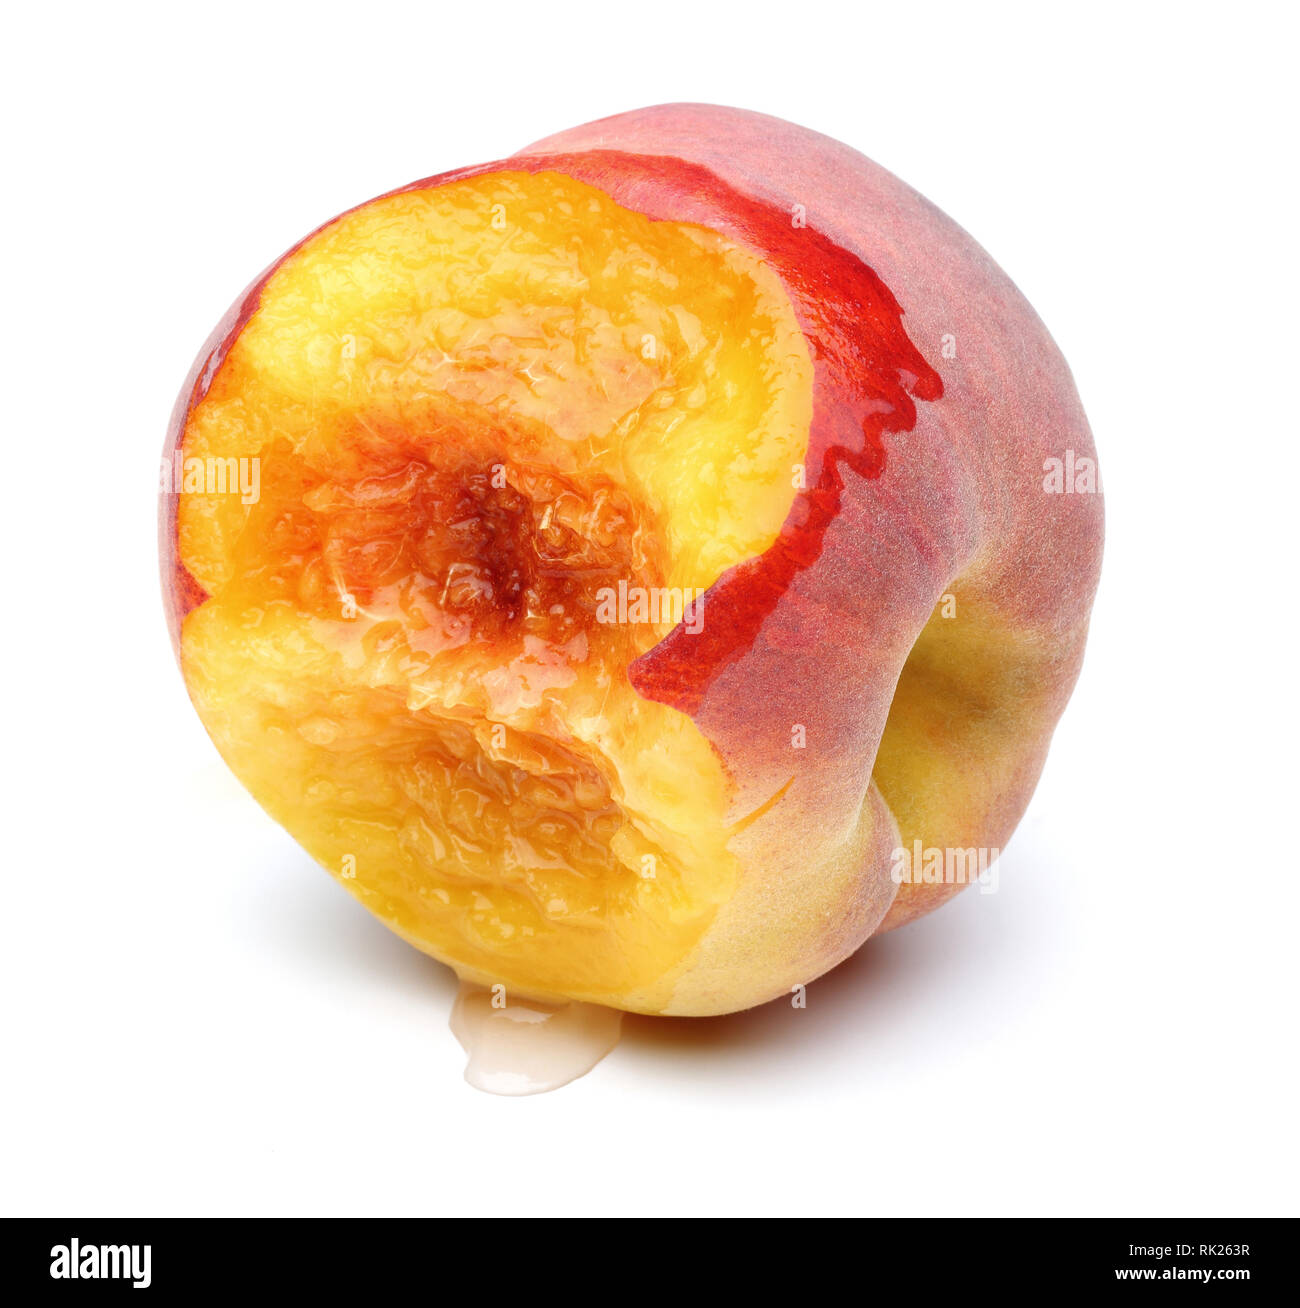 Download 5200 Background Alam Peach Terbaik